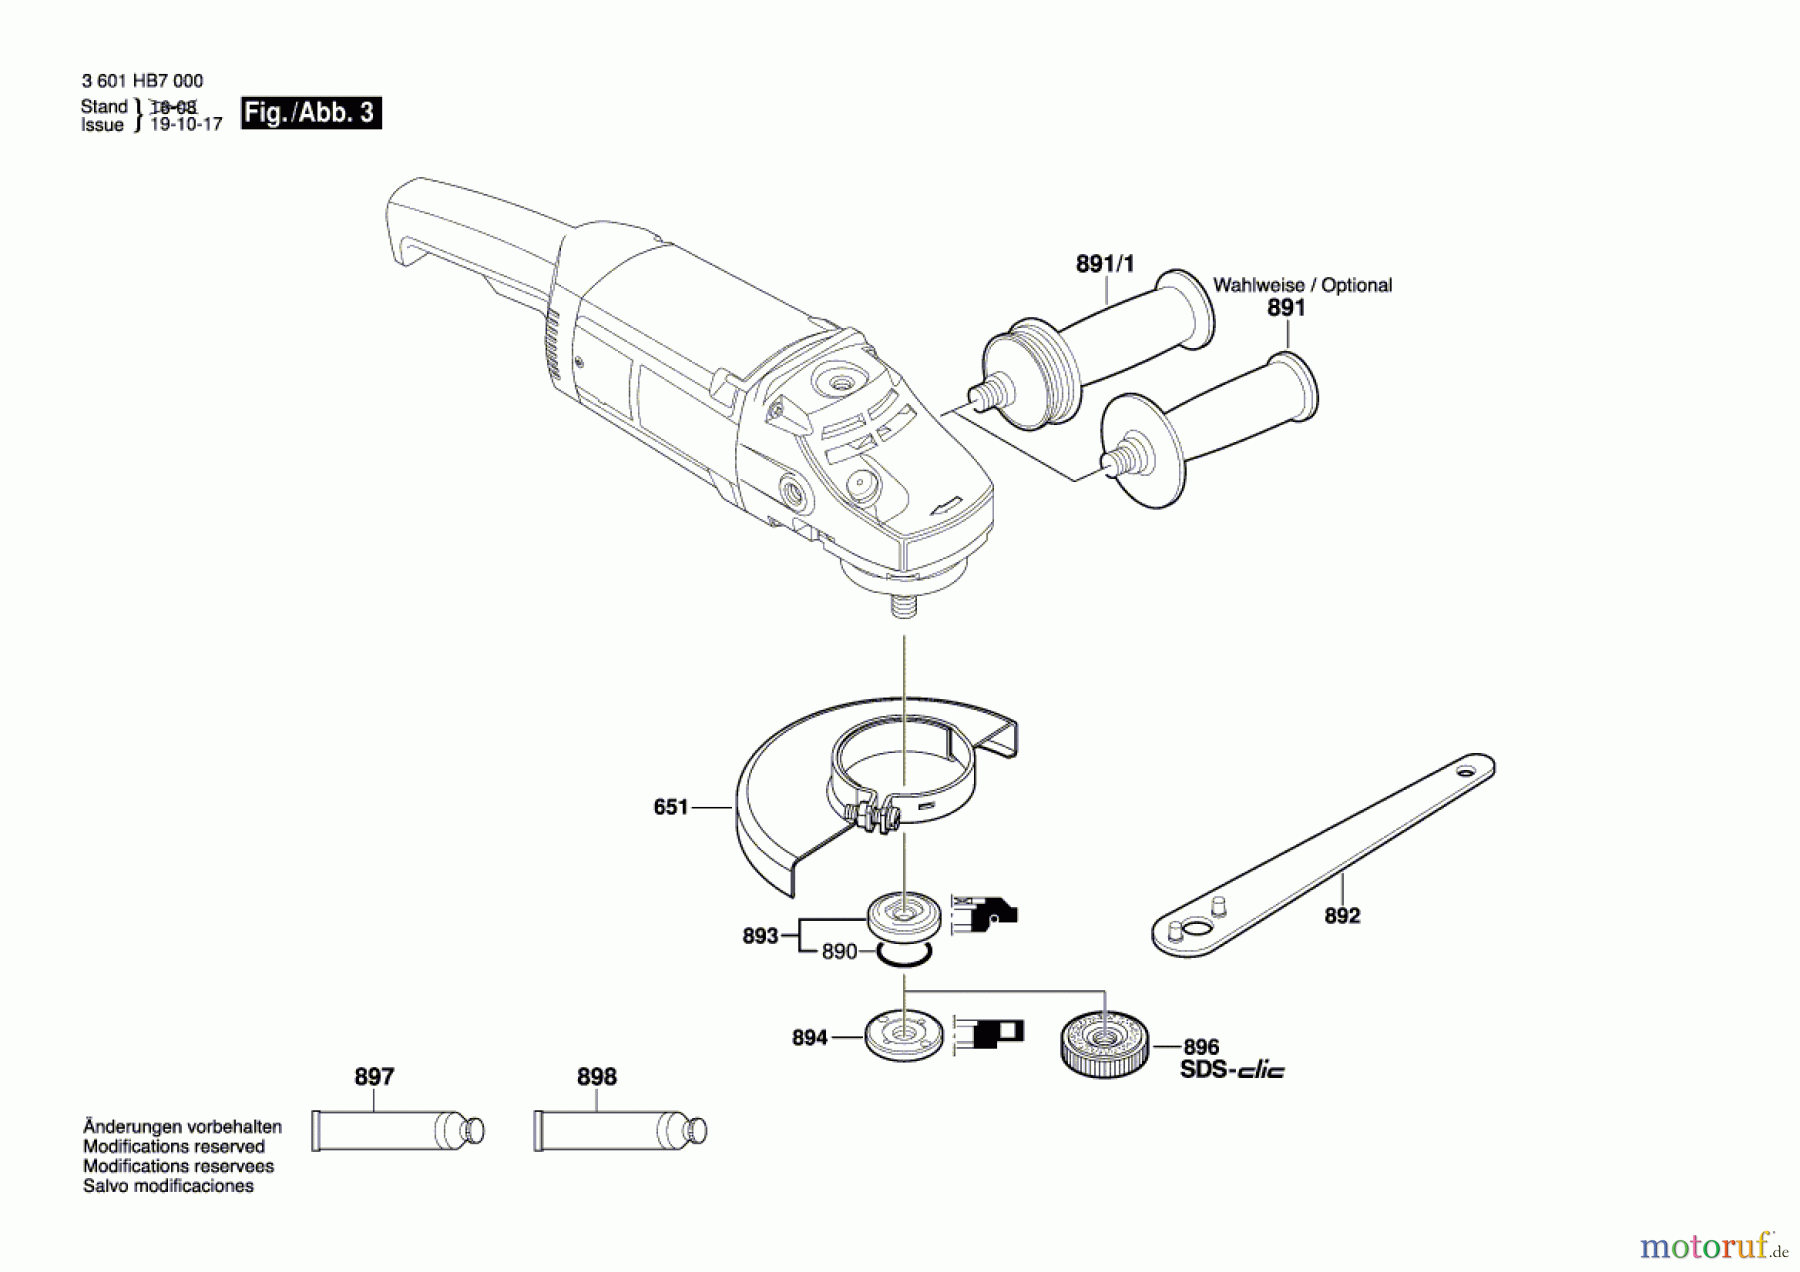  Bosch Werkzeug Winkelschleifer GWS 2000 Seite 3